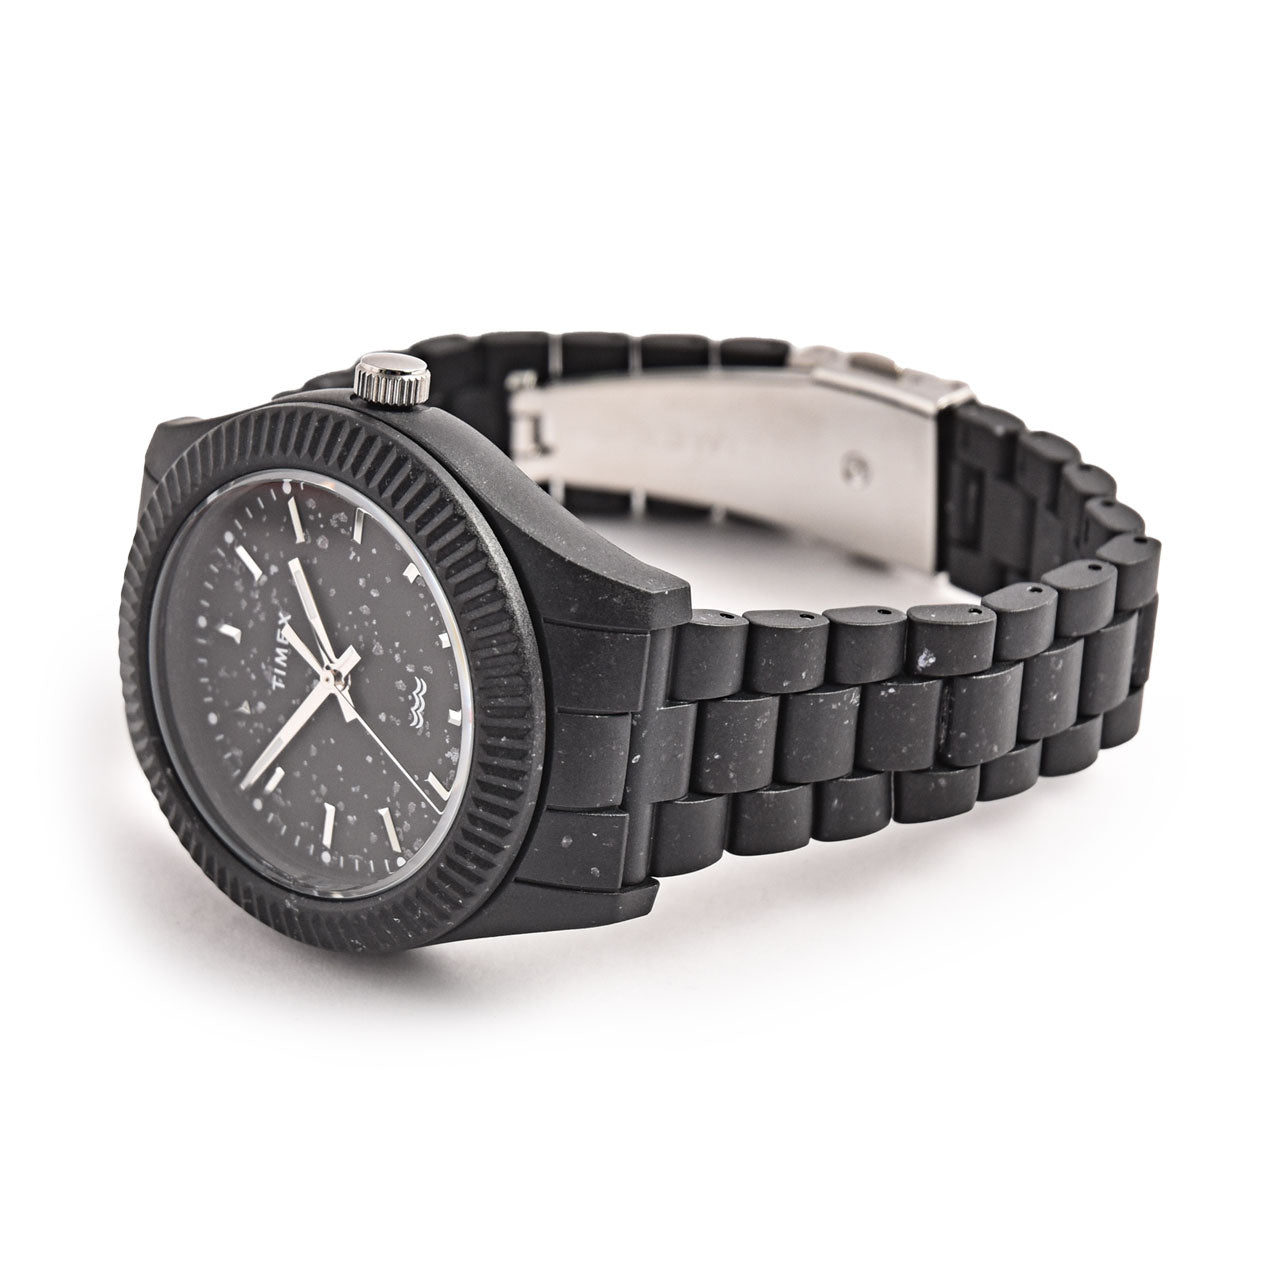 Timex Legacy Ocean Plastic Watch